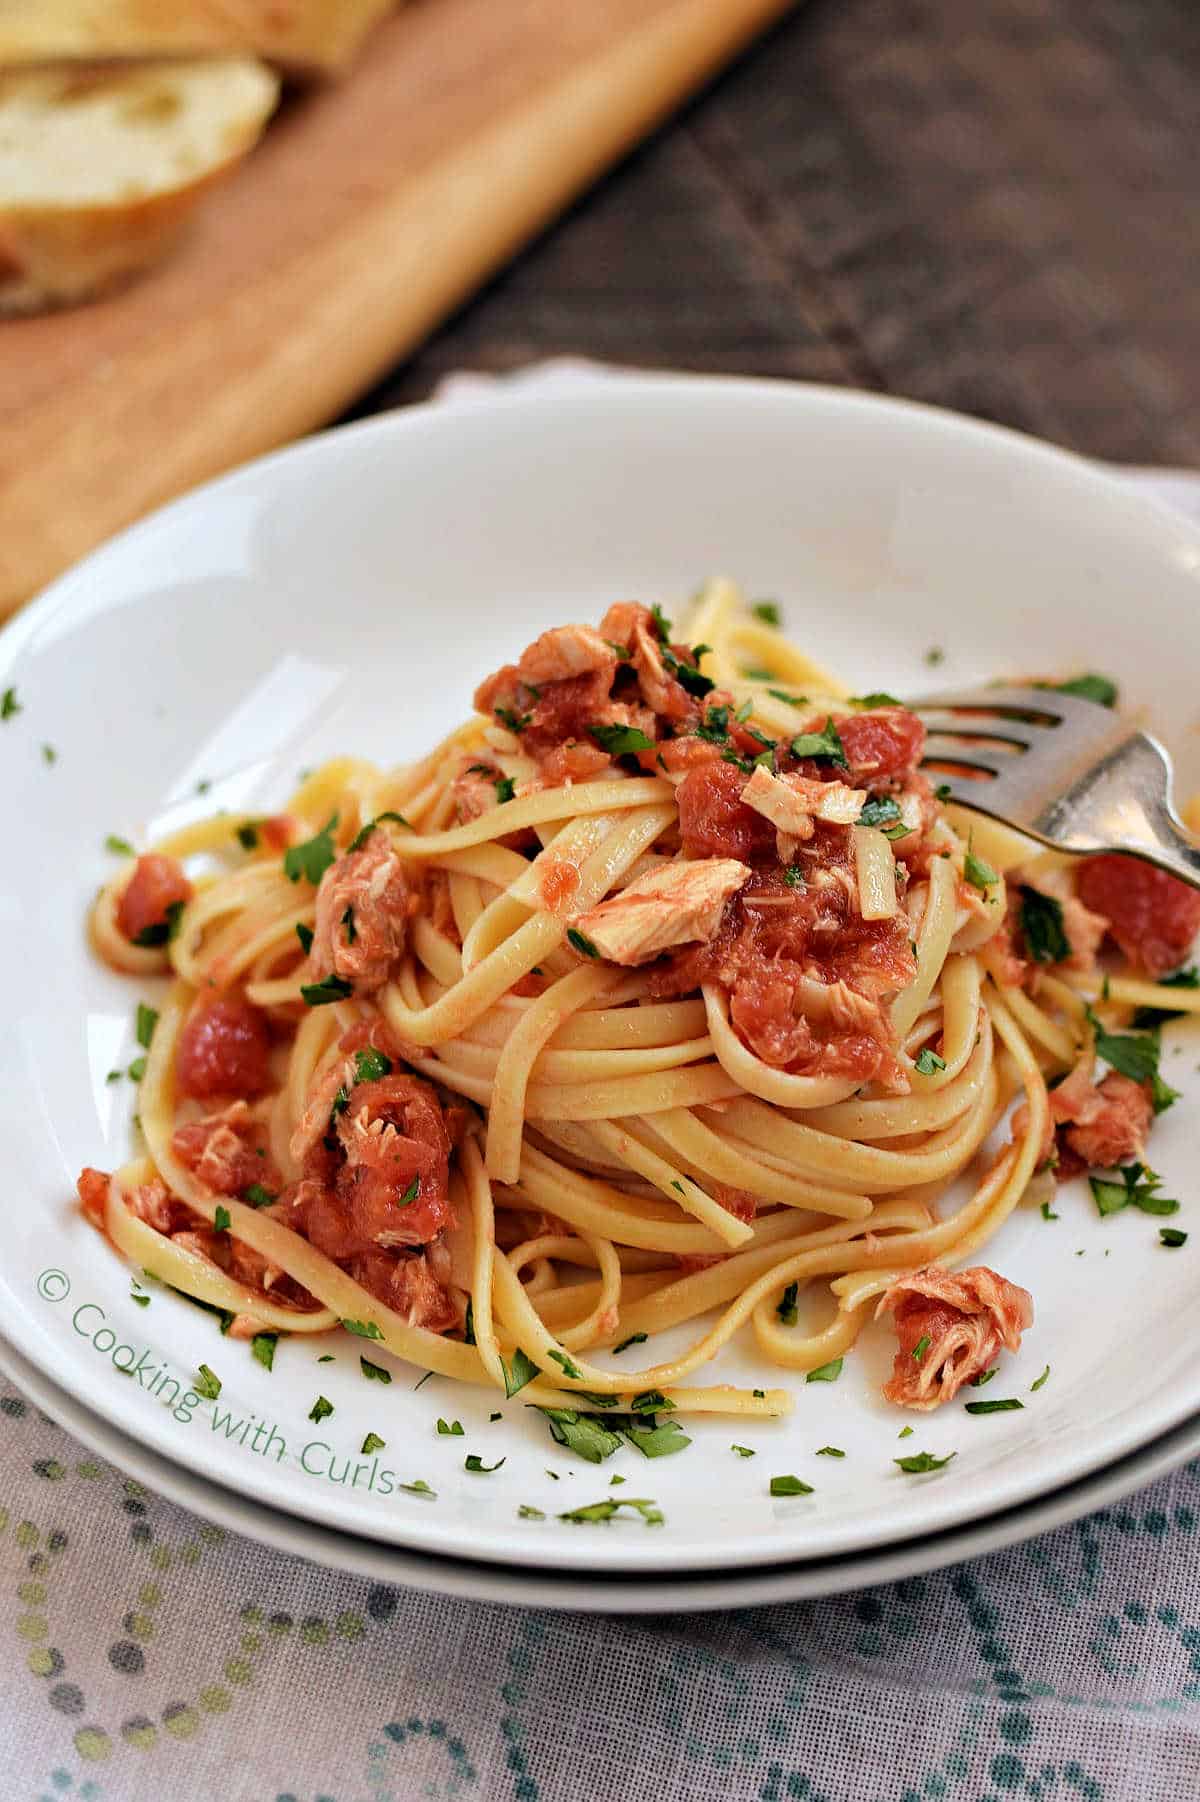 Pasta-al-tonno-or-spaghetti-topped-with-tuna-tomato-sauce-in-a-bowl.